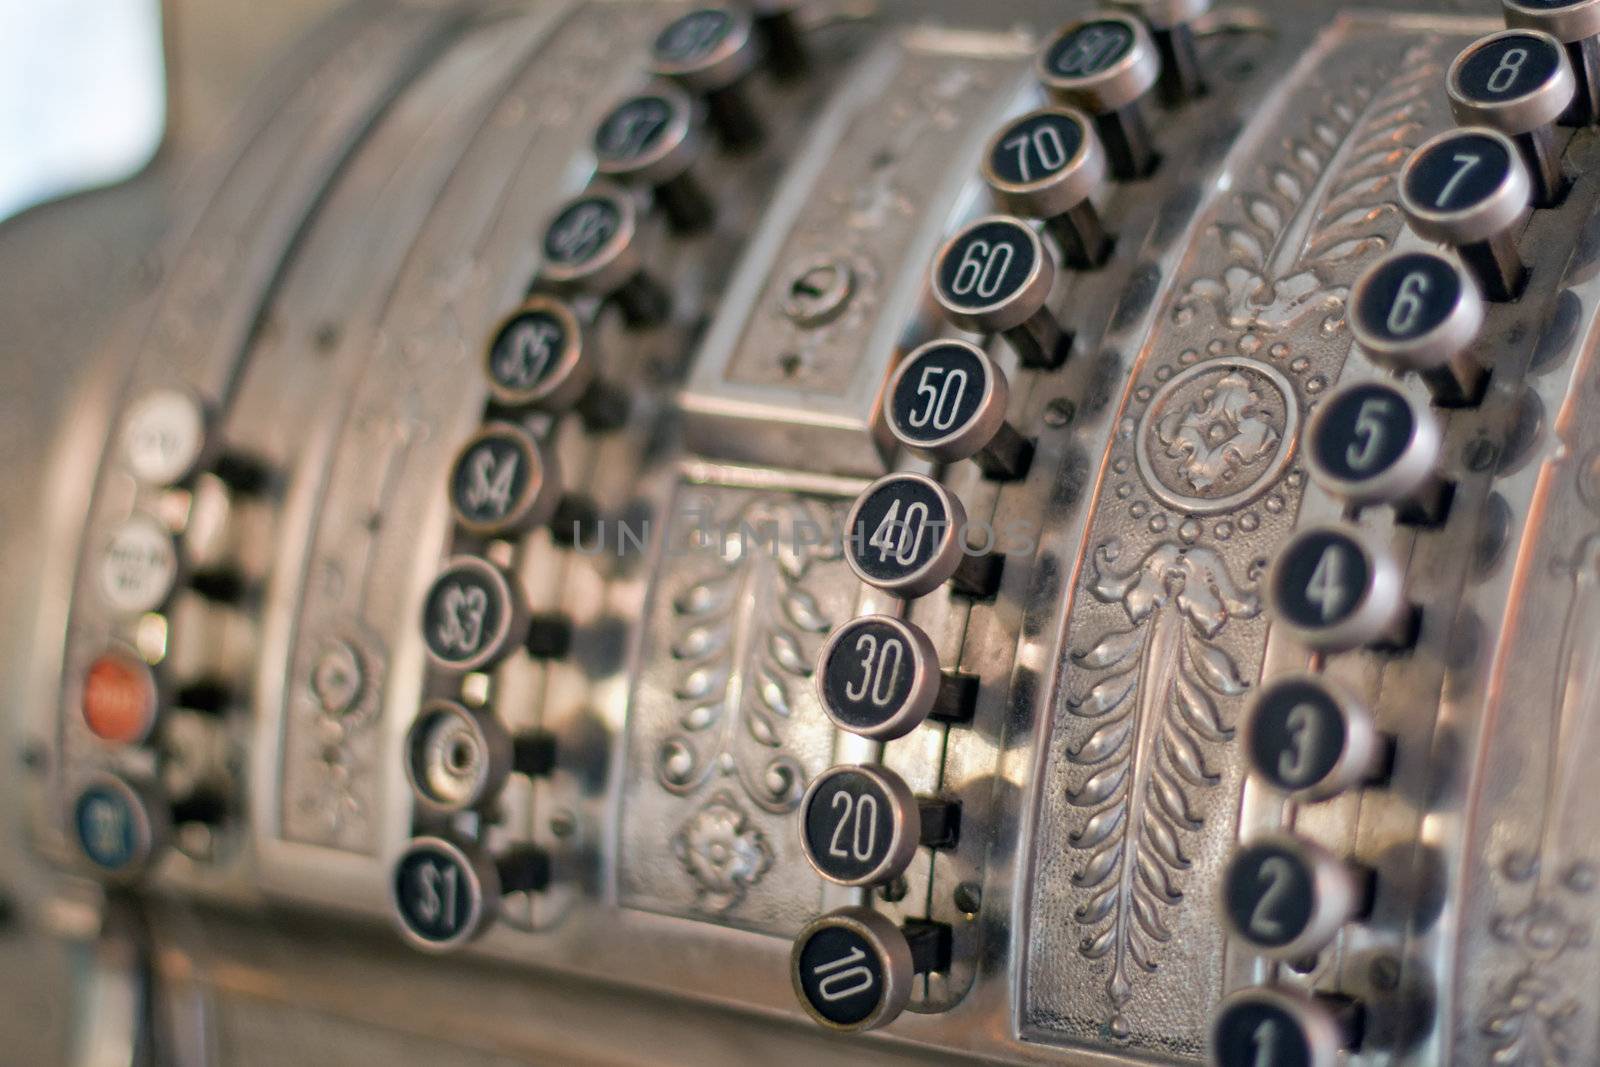 antique store silver cash register buttons close